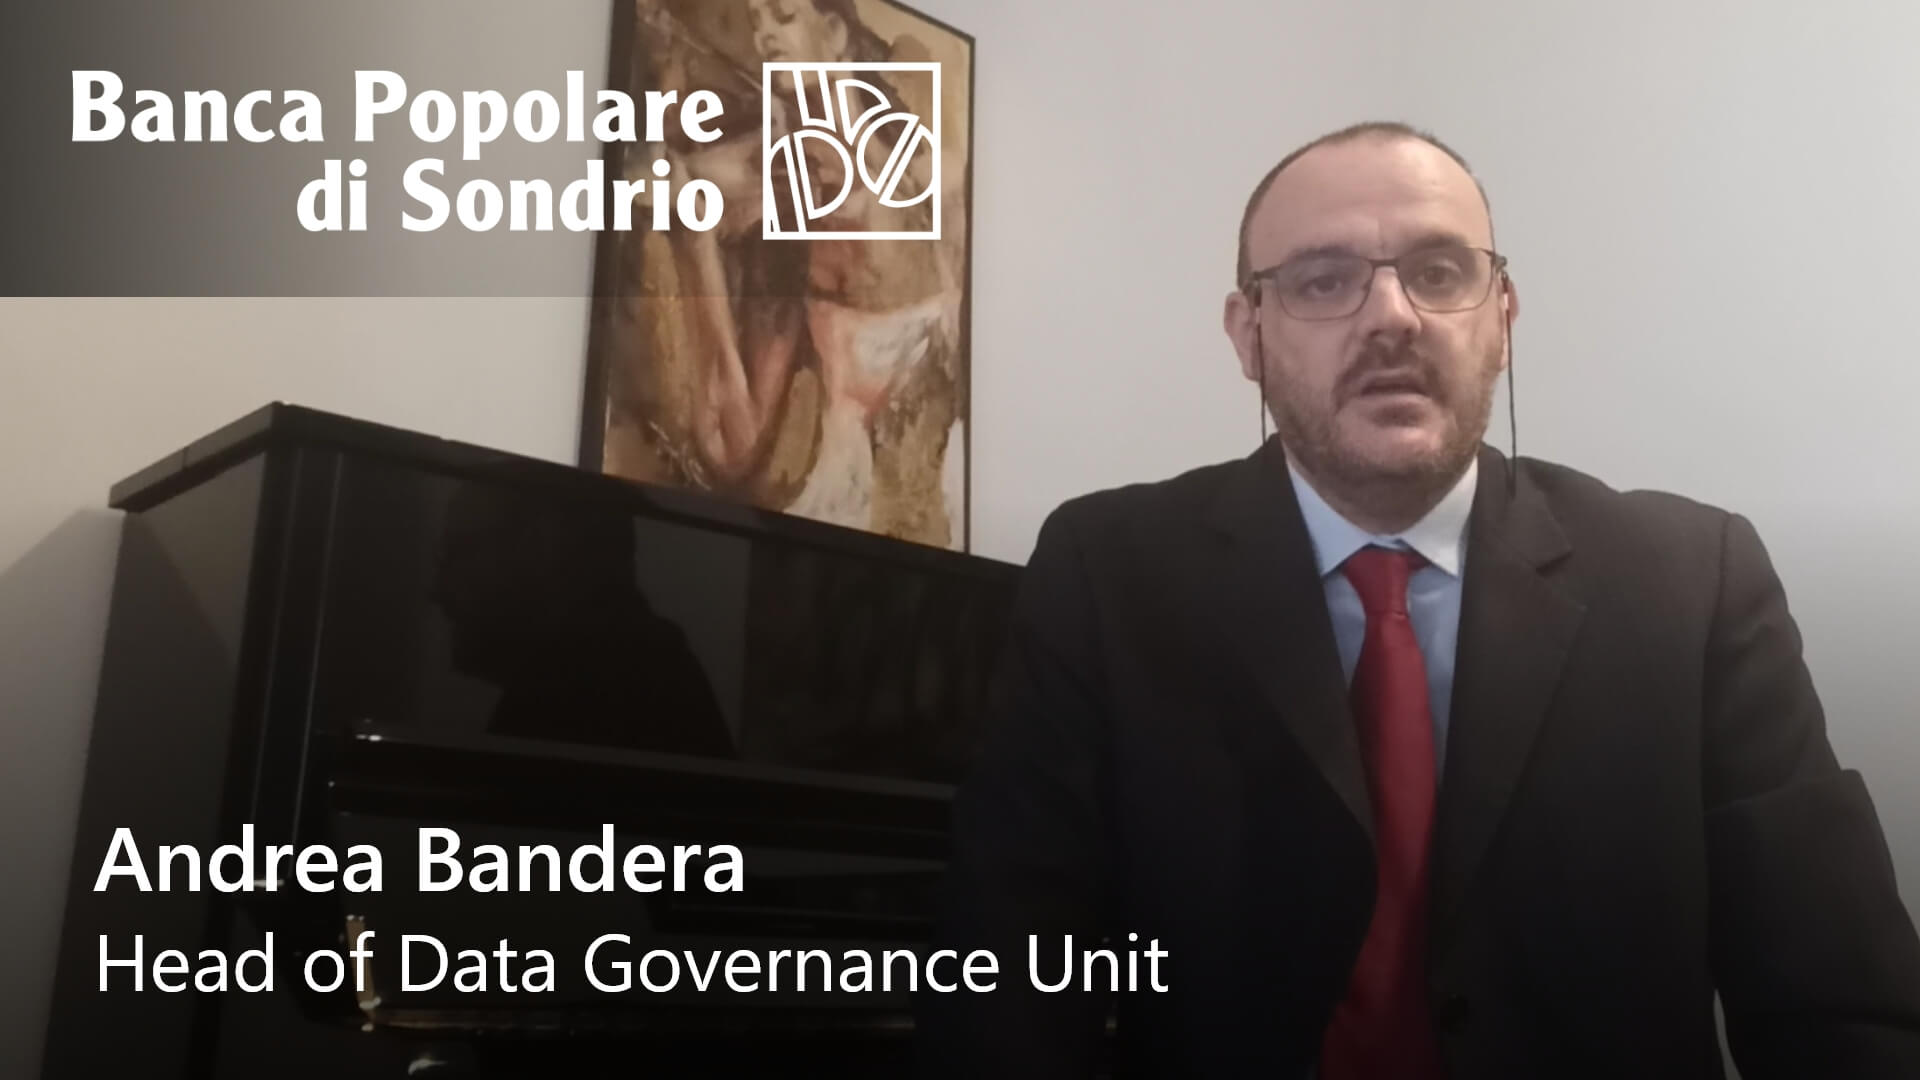 Business Glossary, un approccio bottom-up per Andrea Bandera di Banca Popolare di Sondrio